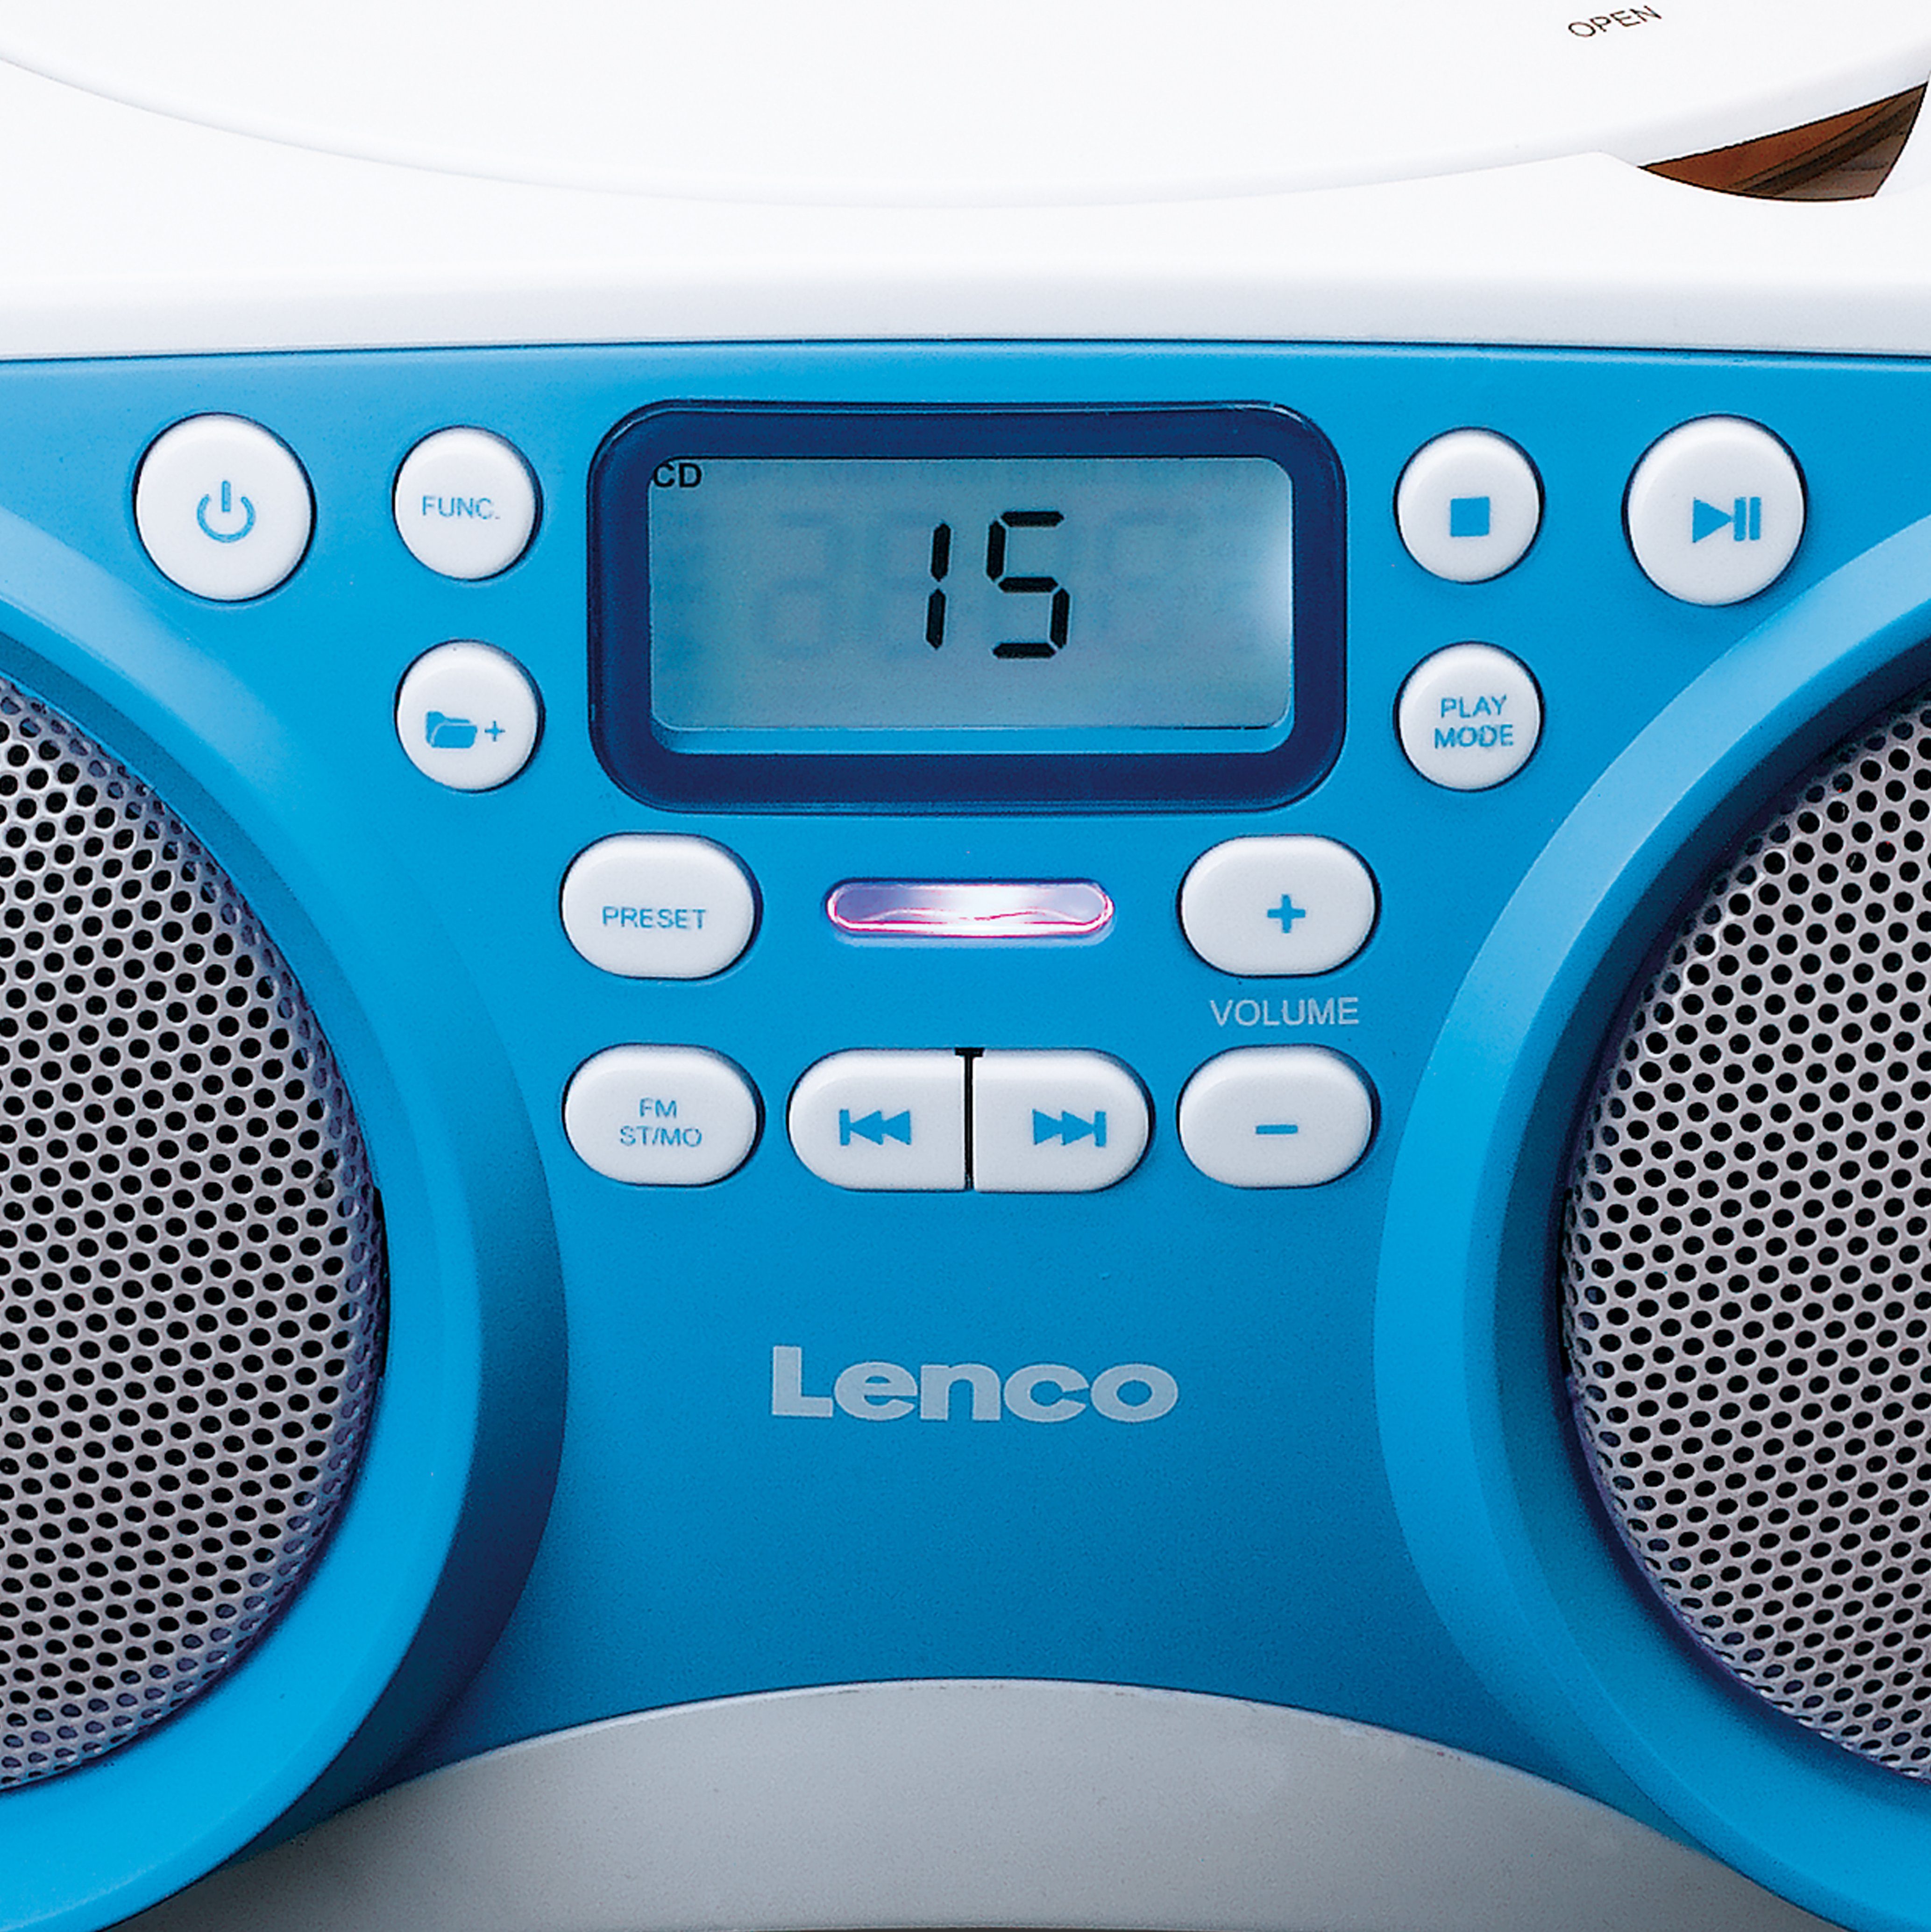 Lenco SCD-301BU CD-Radiorecorder (FM) Weiß-Blau